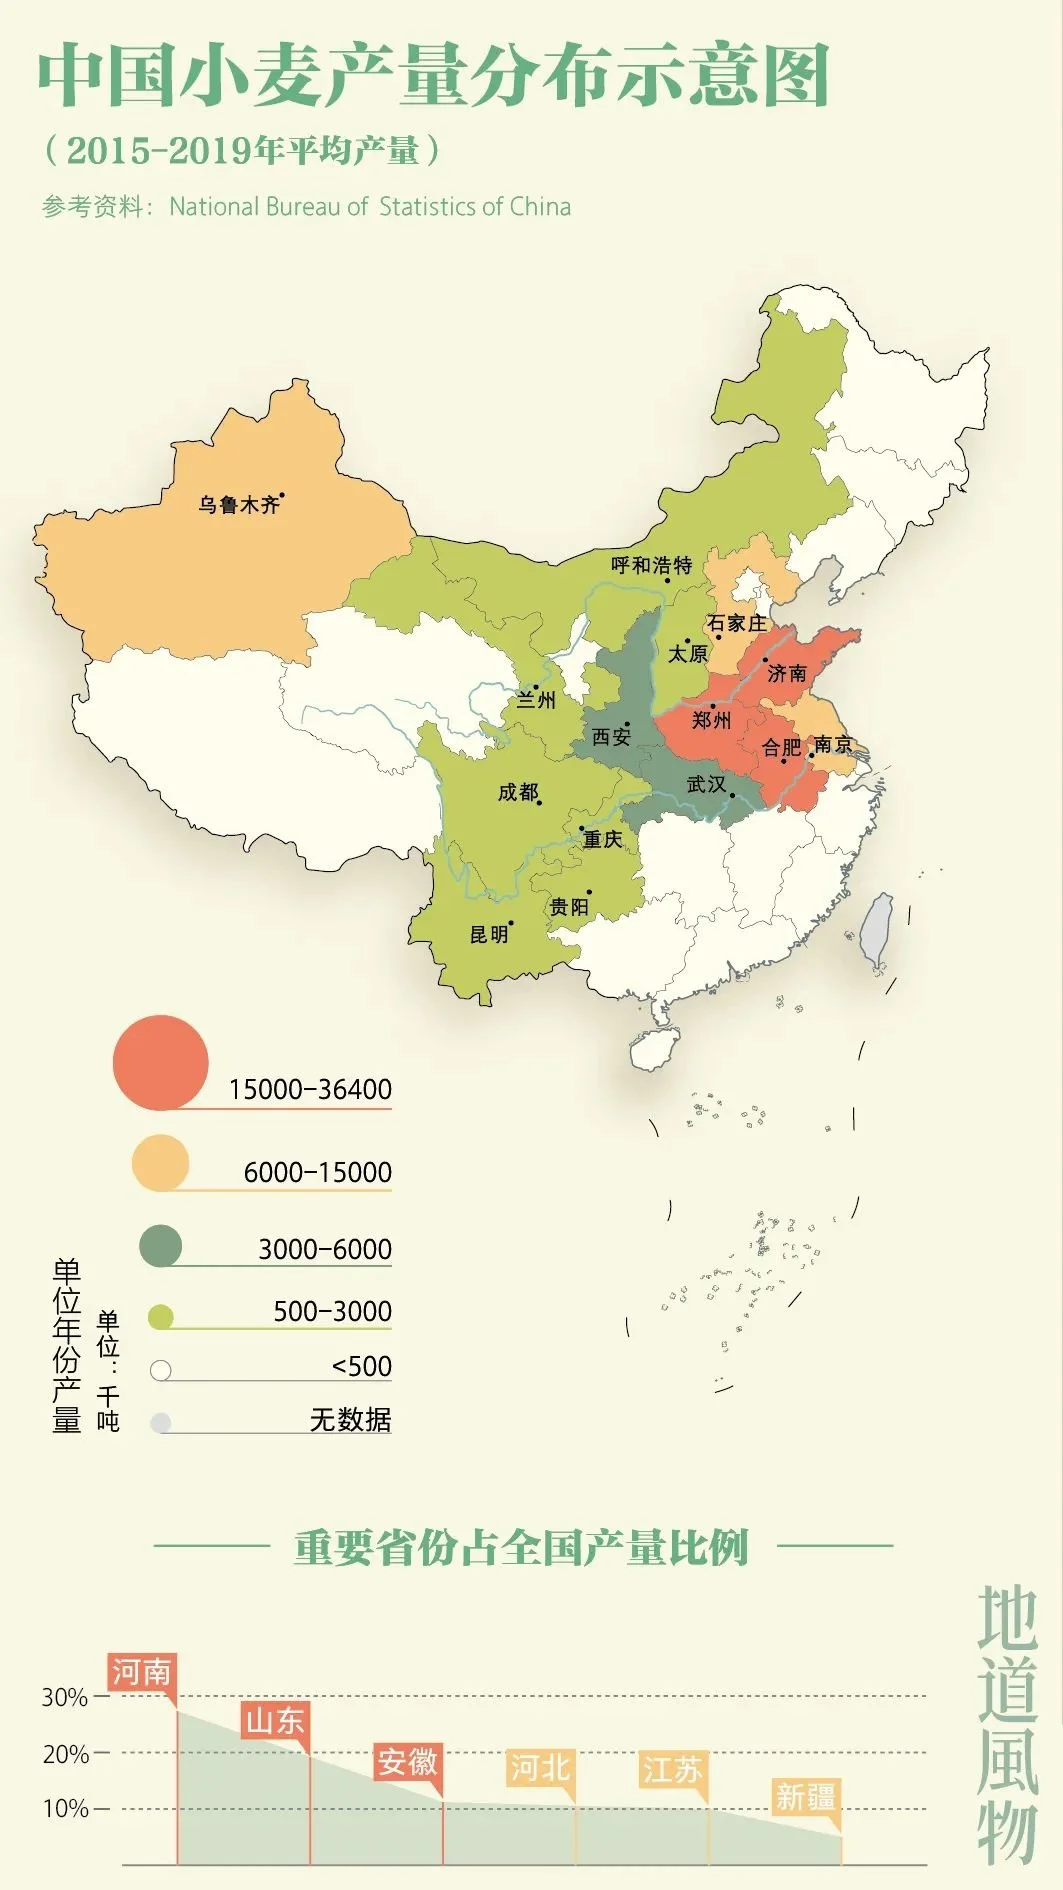 中国小麦产量分布示意图，河南小麦产量位居第一。制图/monk